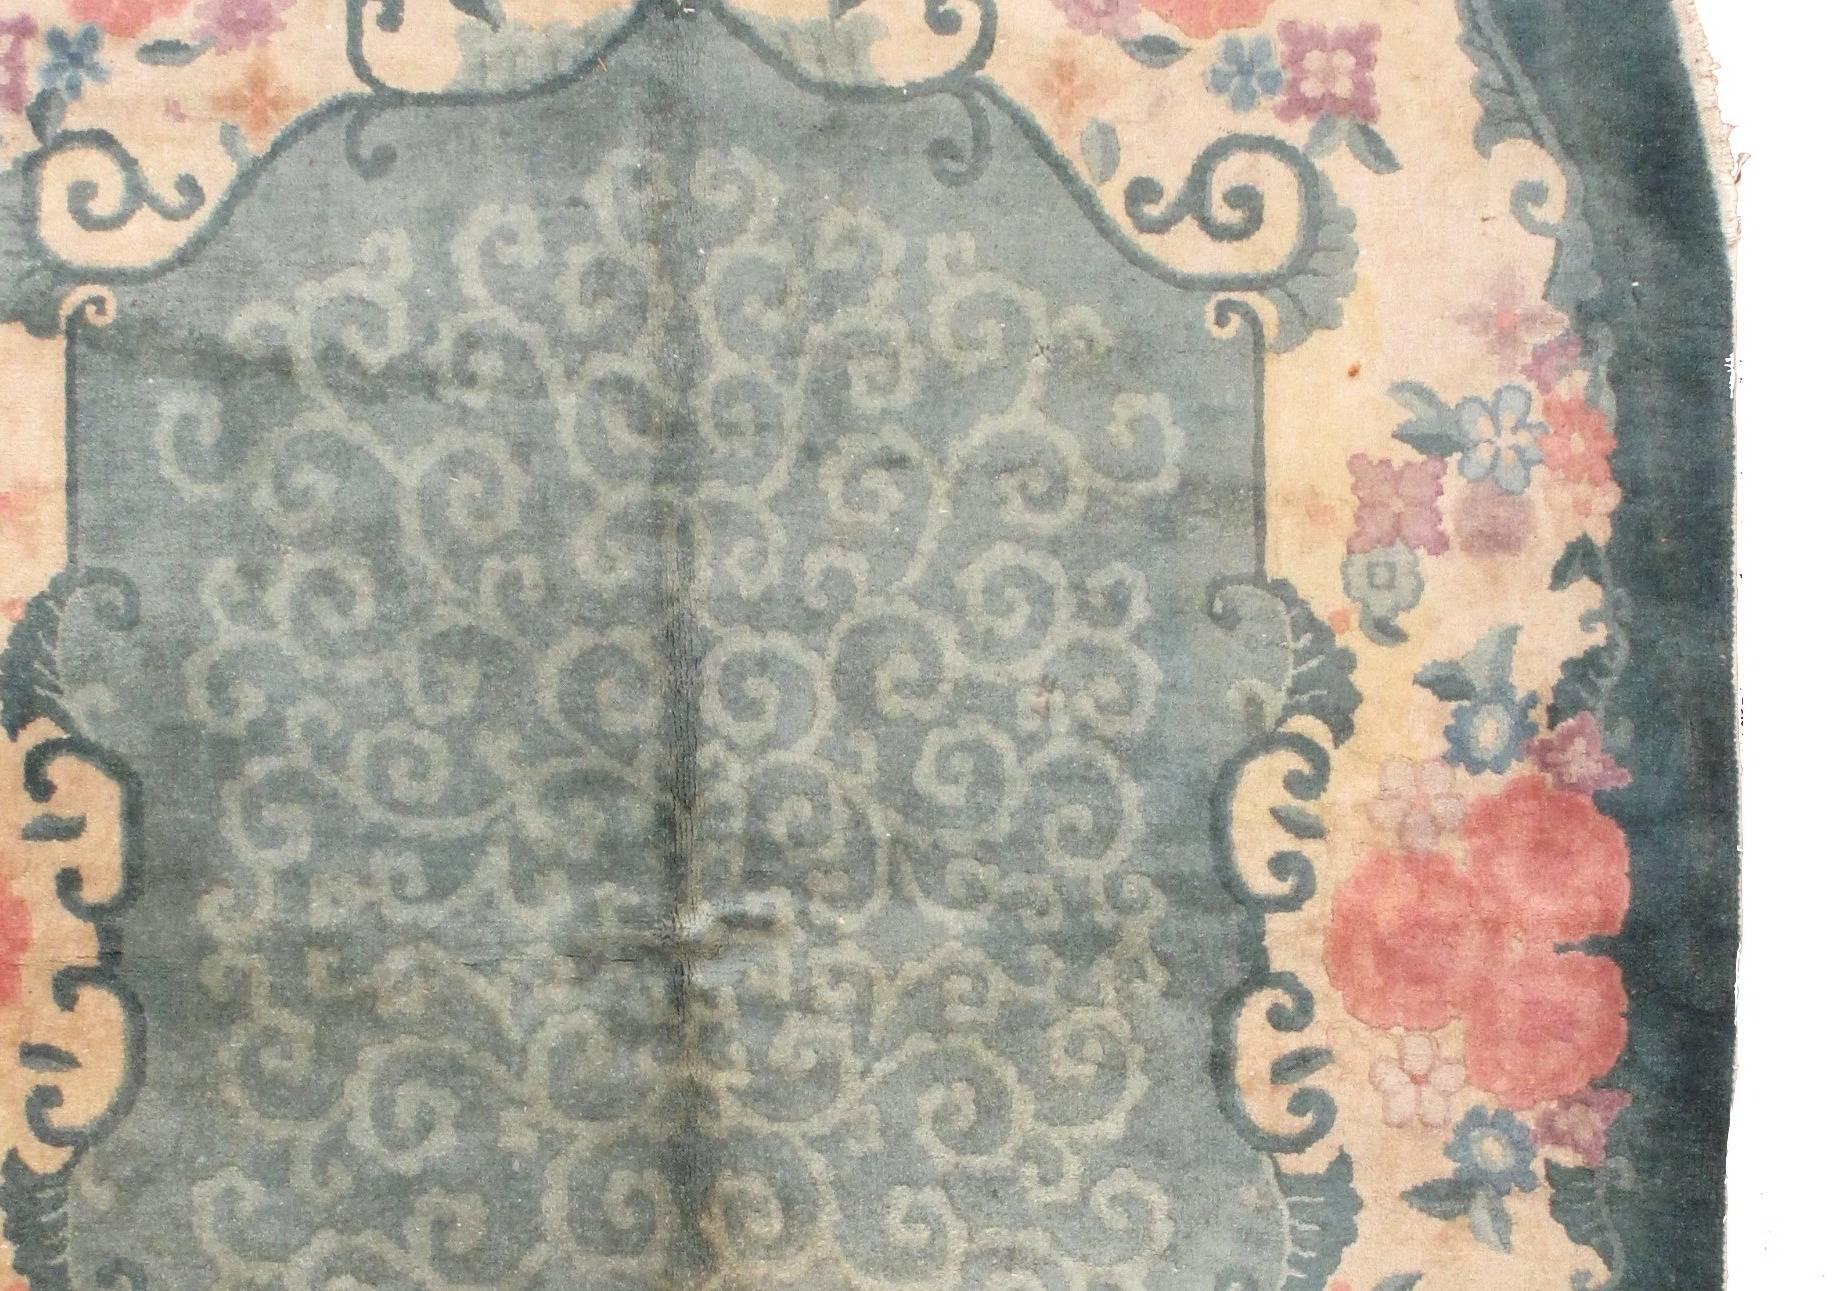 Ovaler chinesischer Art-Déco-Teppich im Originalzustand. Schöne grüne Farbe des Feldes kombiniert zusammen mit creme-beige Grenze. Der Teppich ist mit einem floralen Muster versehen, die Bordüre ist über und über mit roten Rosen bedeckt. Der